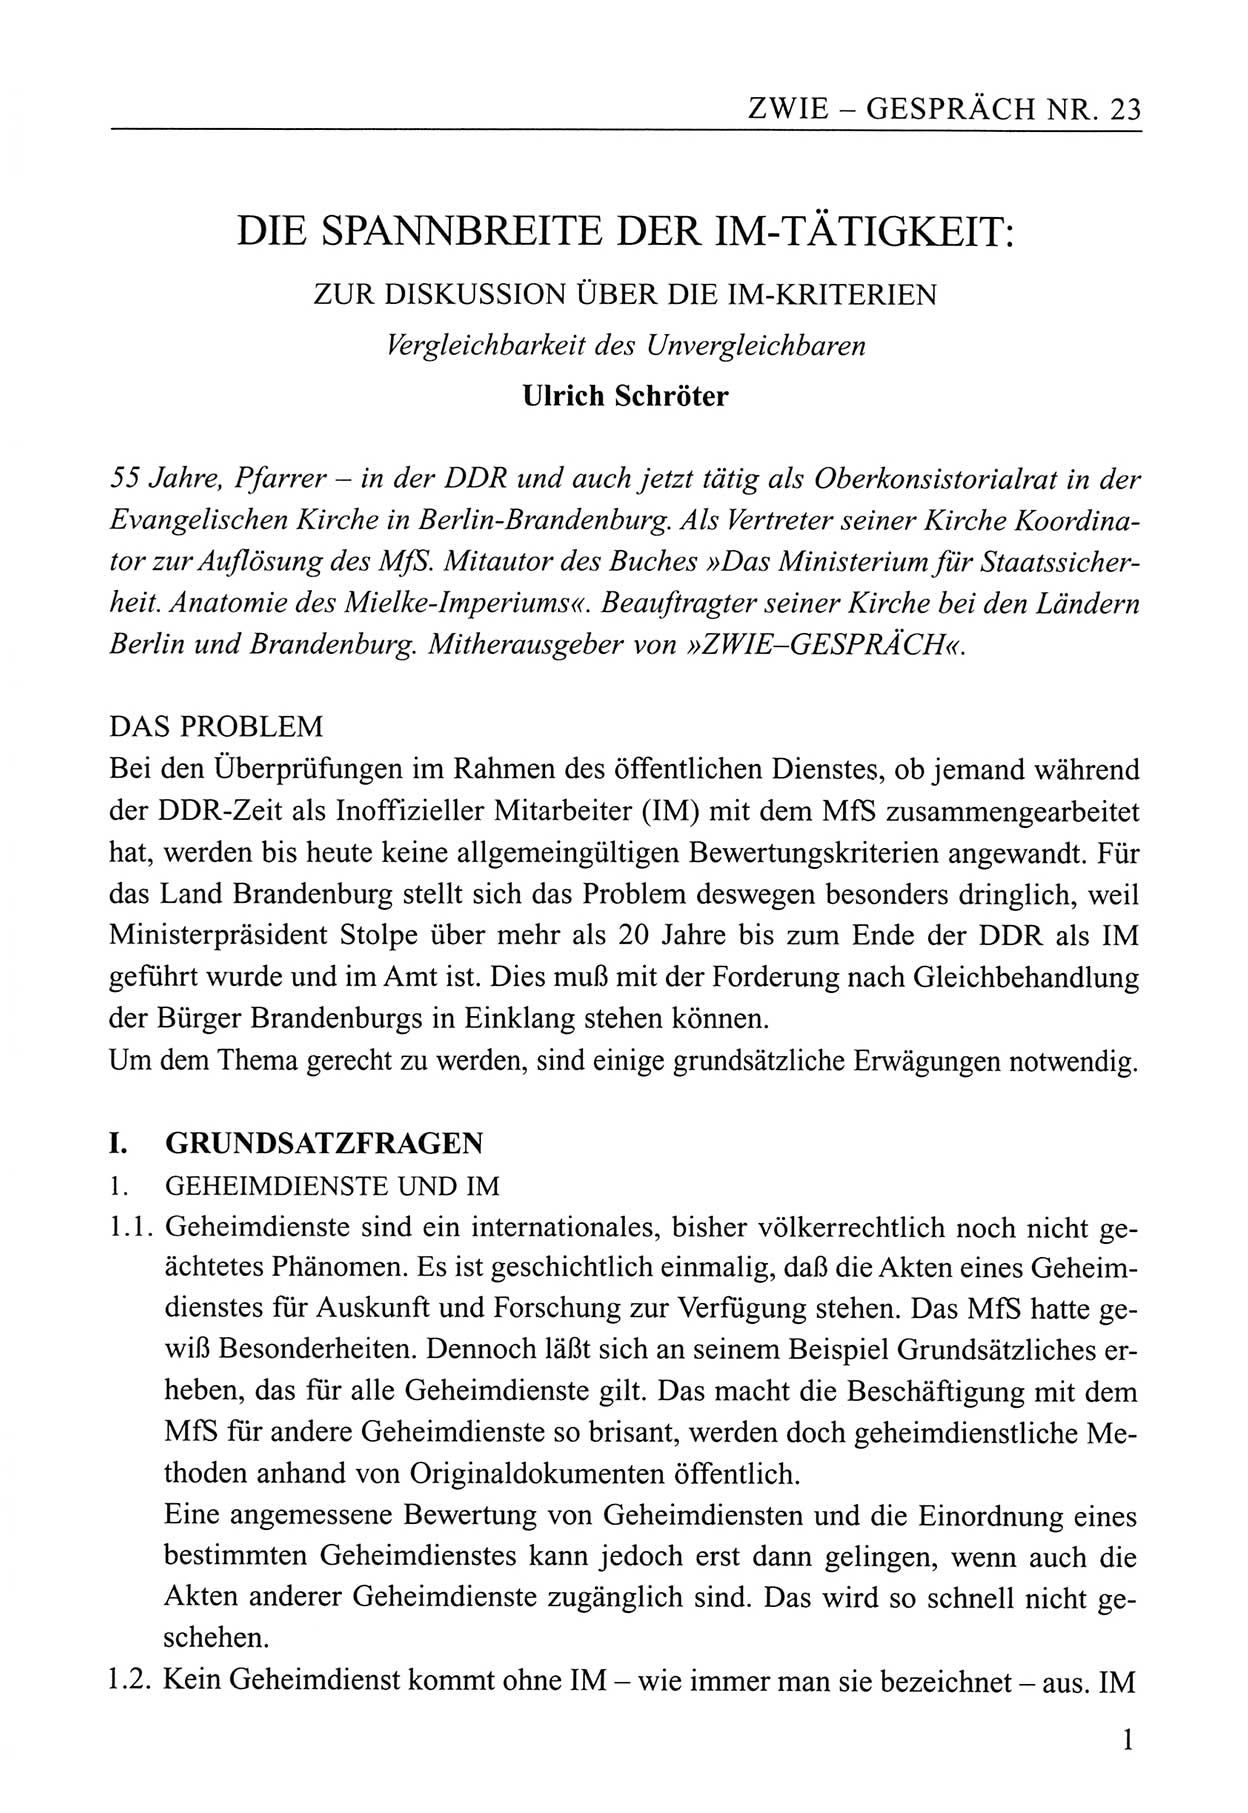 Zwie-Gespräch, Beiträge zum Umgang mit der Staatssicherheits-Vergangenheit [Deutsche Demokratische Republik (DDR)], Ausgabe Nr. 23, Berlin 1994, Seite 1 (Zwie-Gespr. Ausg. 23 1994, S. 1)